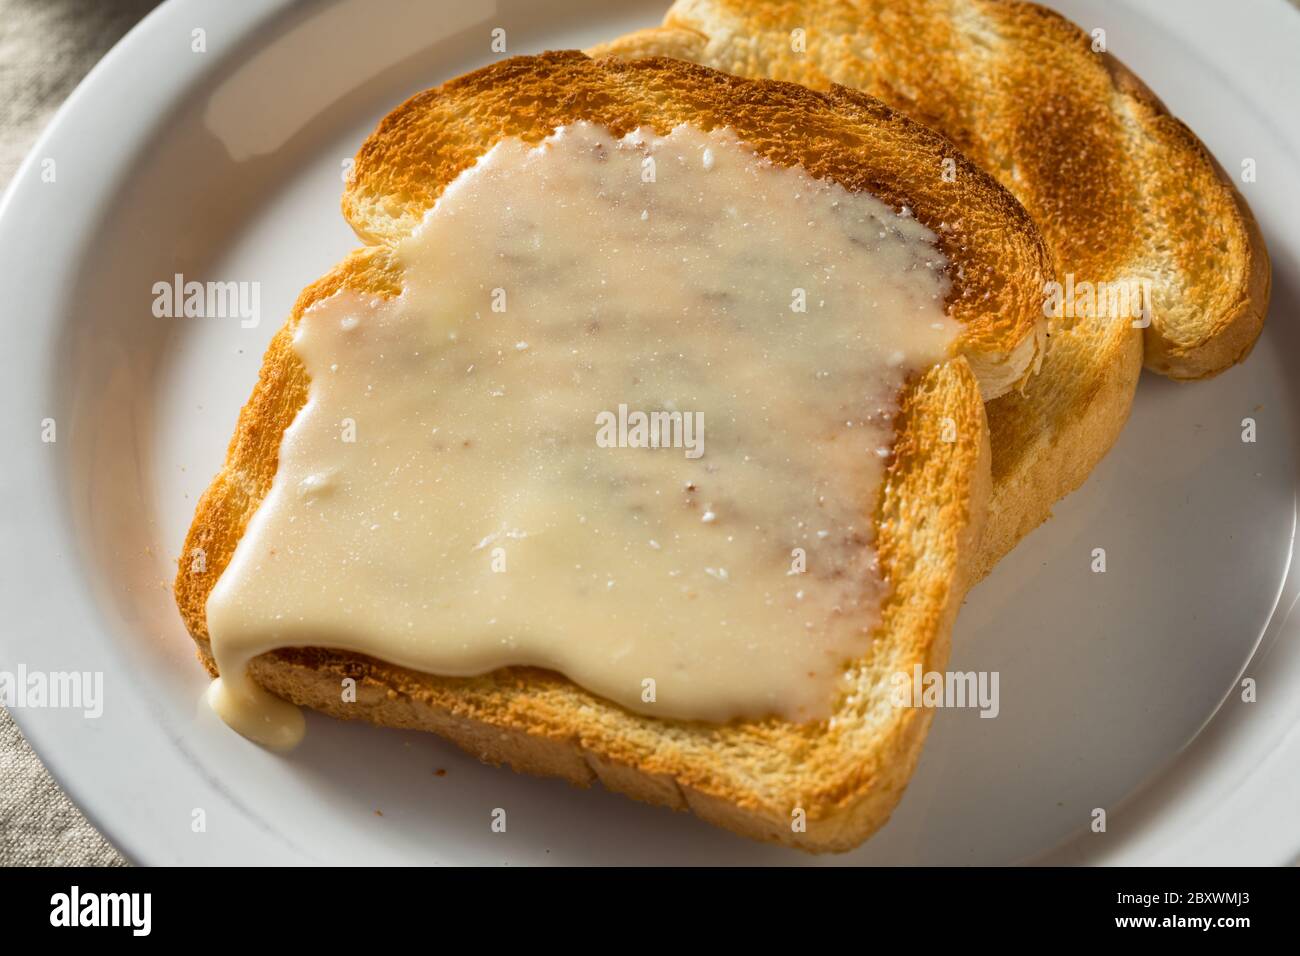 Sirop d'érable maison sur toast prêt à manger Banque D'Images